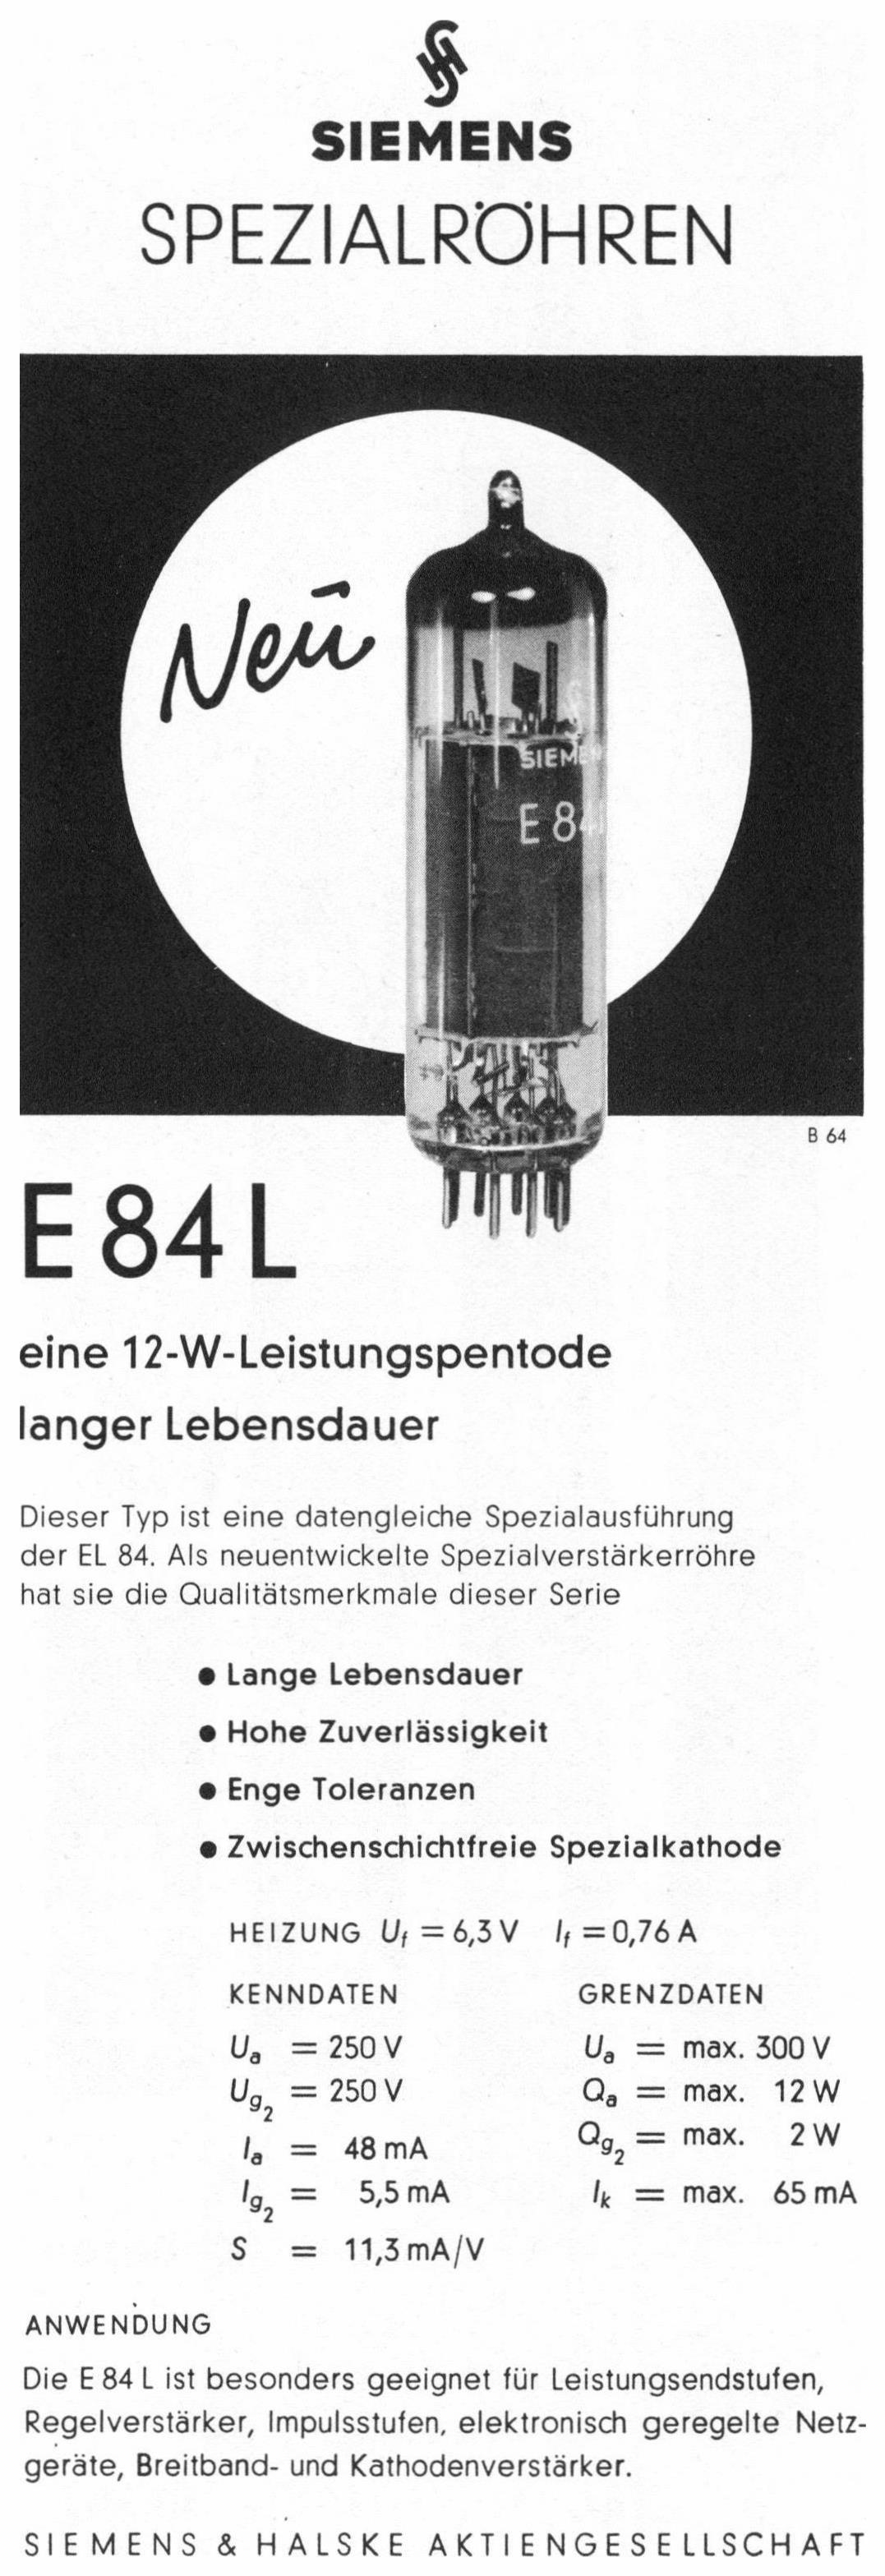 Siemens 1960 04.jpg